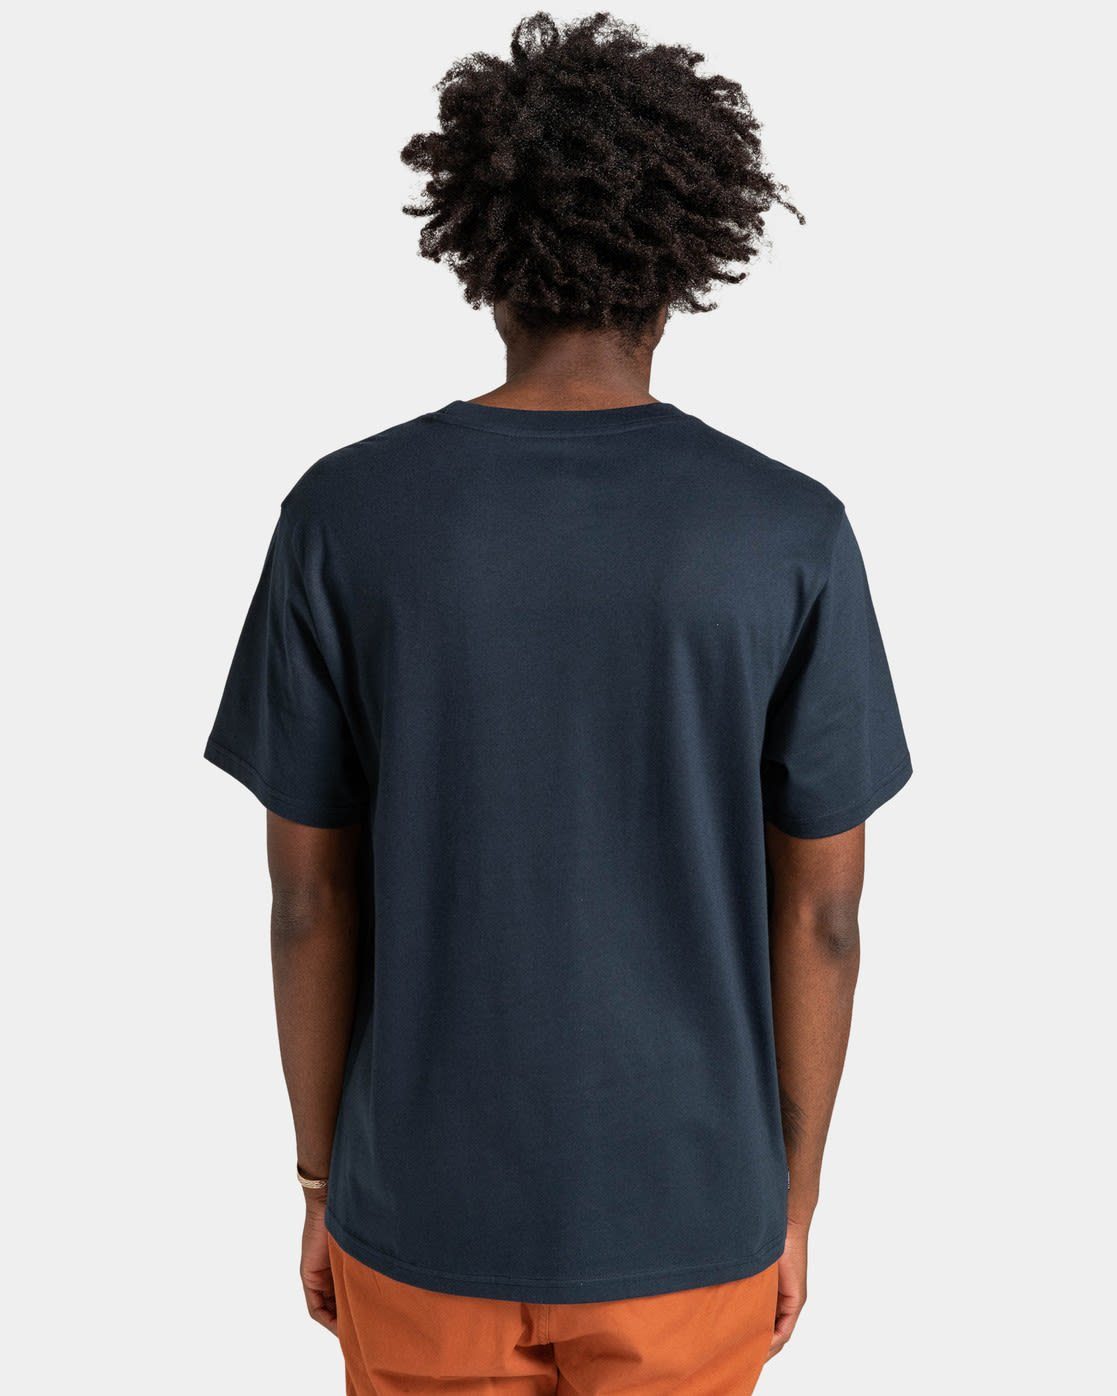 T-Shirt Vertical Kurzarm-Shirt Element Tees Navy Eclipse Elemental M Herren